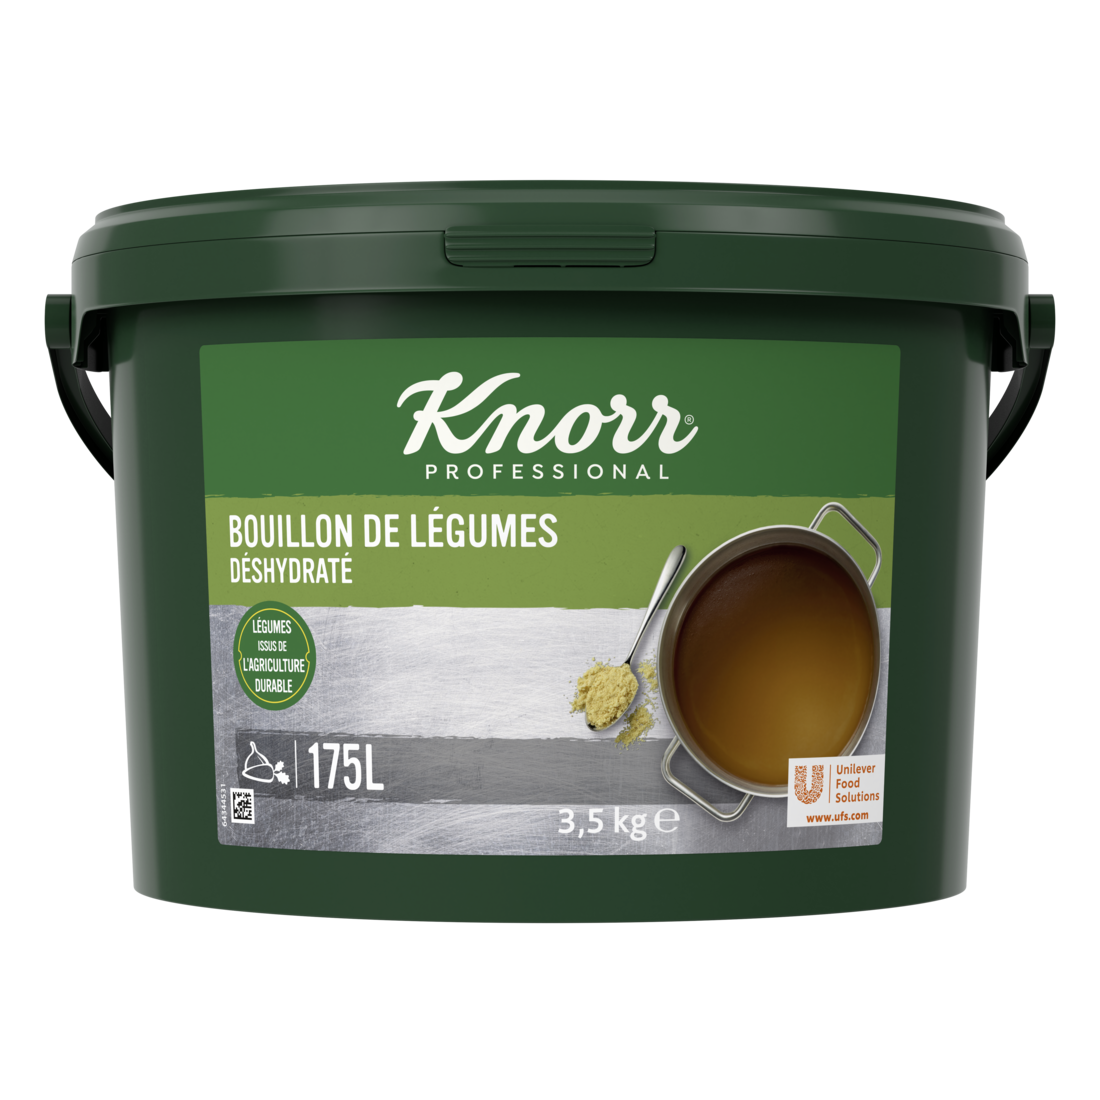 Knorr Bouillon de Légumes Déshydraté seau 3,5kg jusqu'à 175L - Nouvelle recette avec plus de légumes!